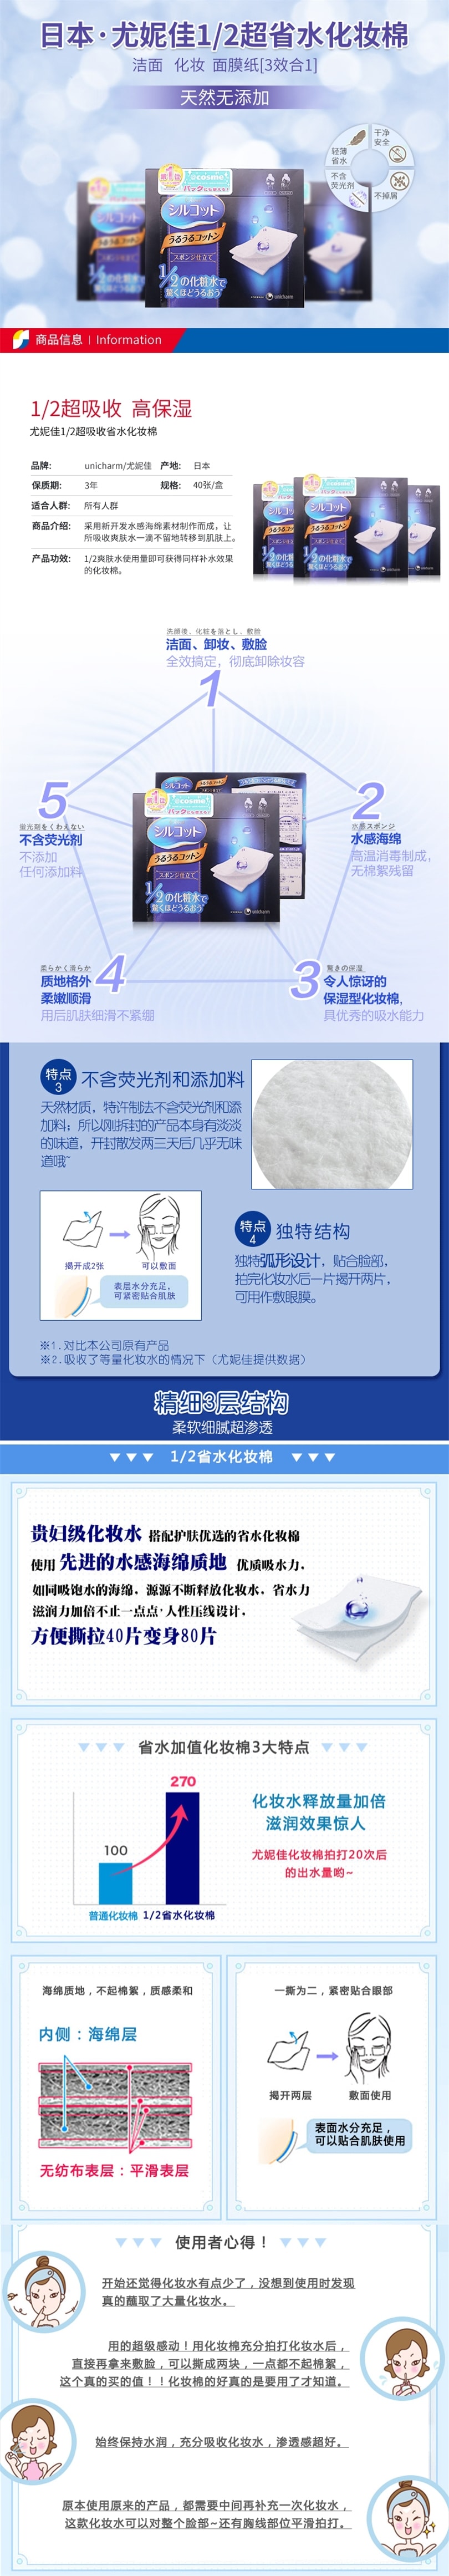 【日本直邮】日本UNICHARM尤妮佳 1/2省水超吸收化妆棉 40枚入 COSME大赏第一位